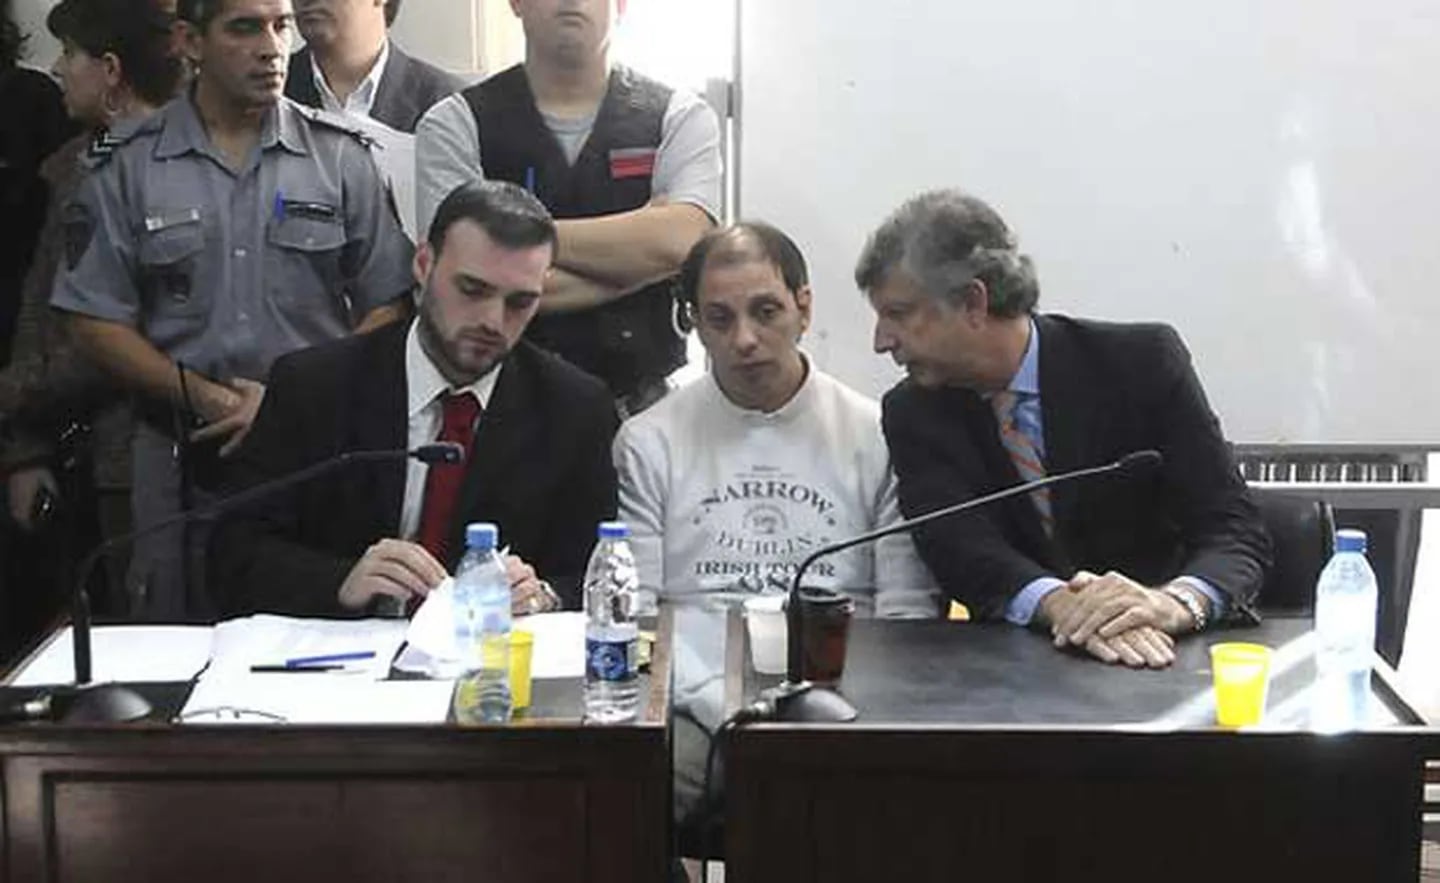 Eduardo Vásquez fue condenado a 18 años de cárcel por el crimen de su esposa, Wanda Taddei. (Foto: Telam)